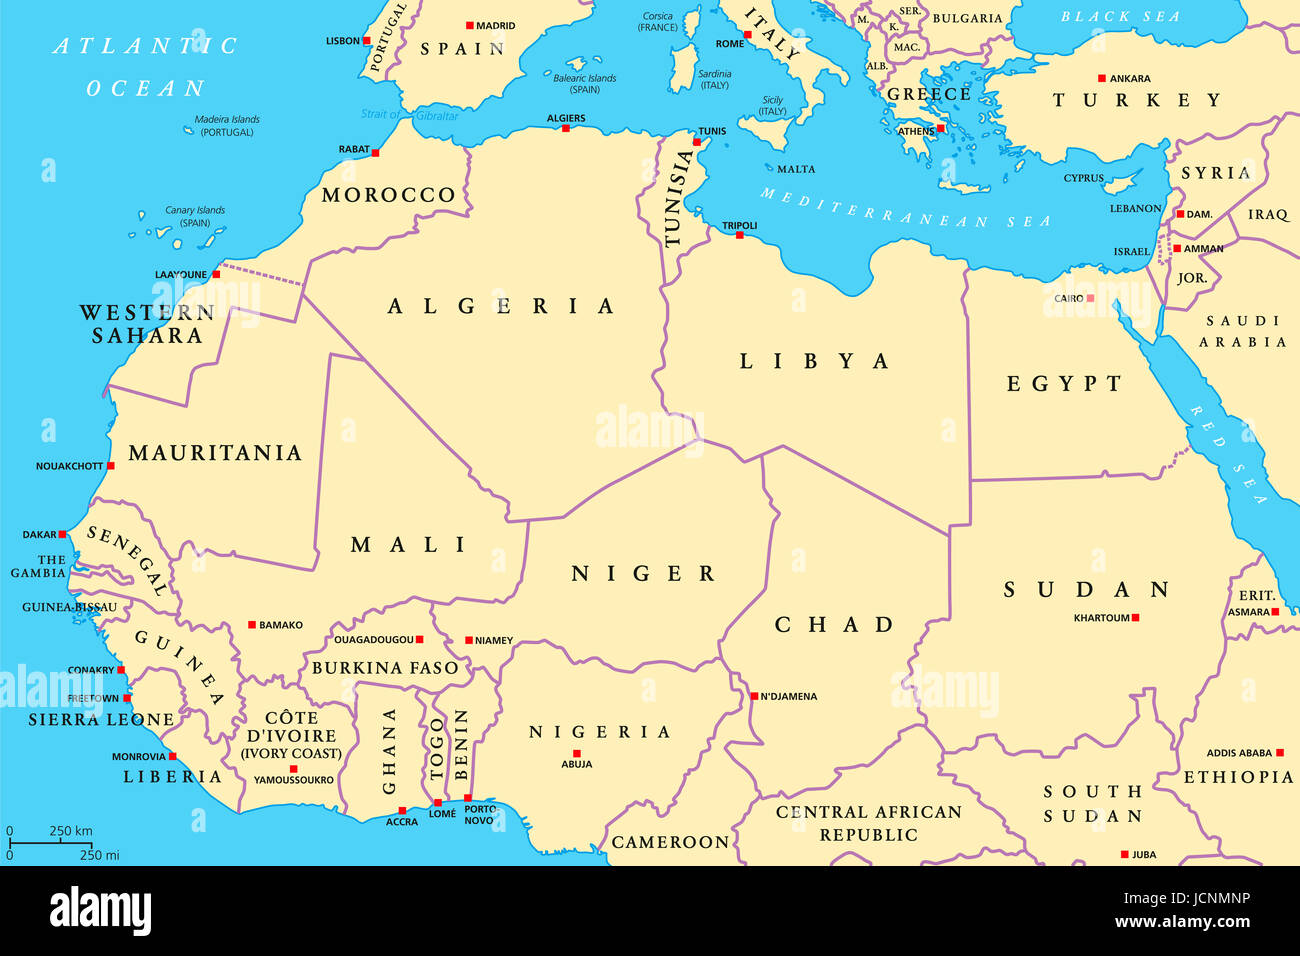 Países de África del Norte mapa político con capiteles y fronteras. Desde la costa atlántica de Marruecos a Egipto y el Mar Rojo. Magreb. Foto de stock